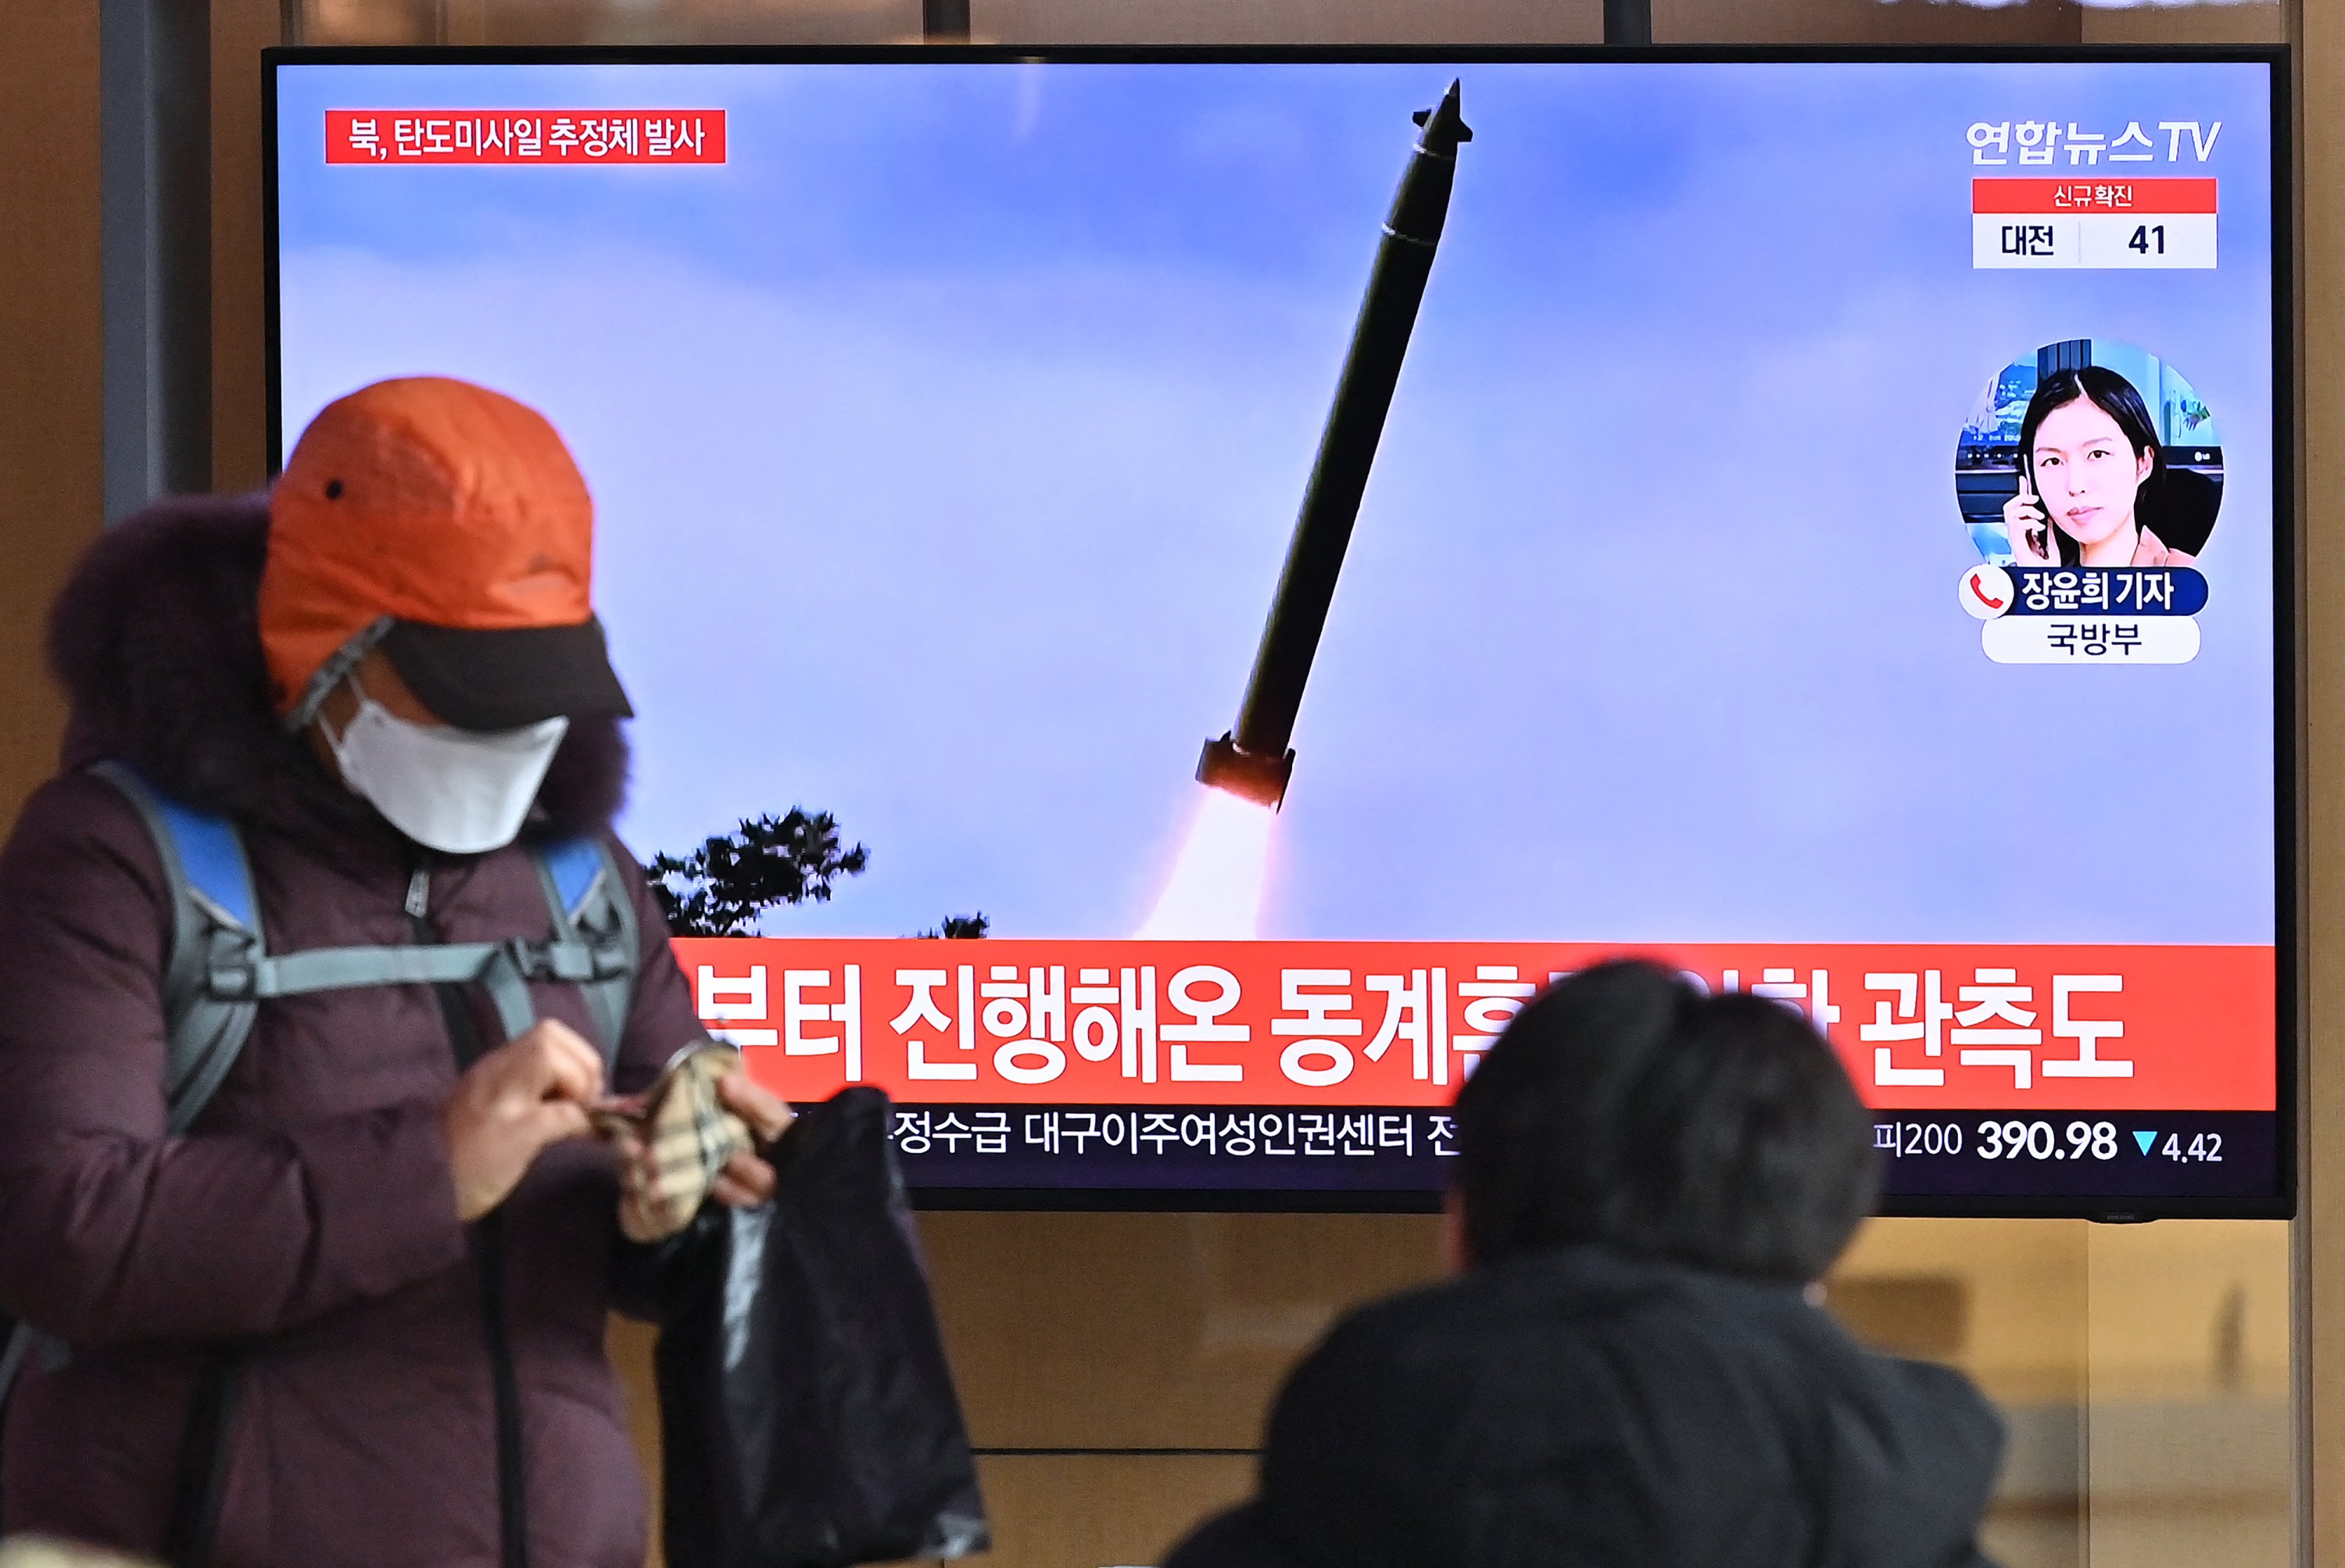 Korea Utara menembakkan ‘rudal balistik yang dicurigai’